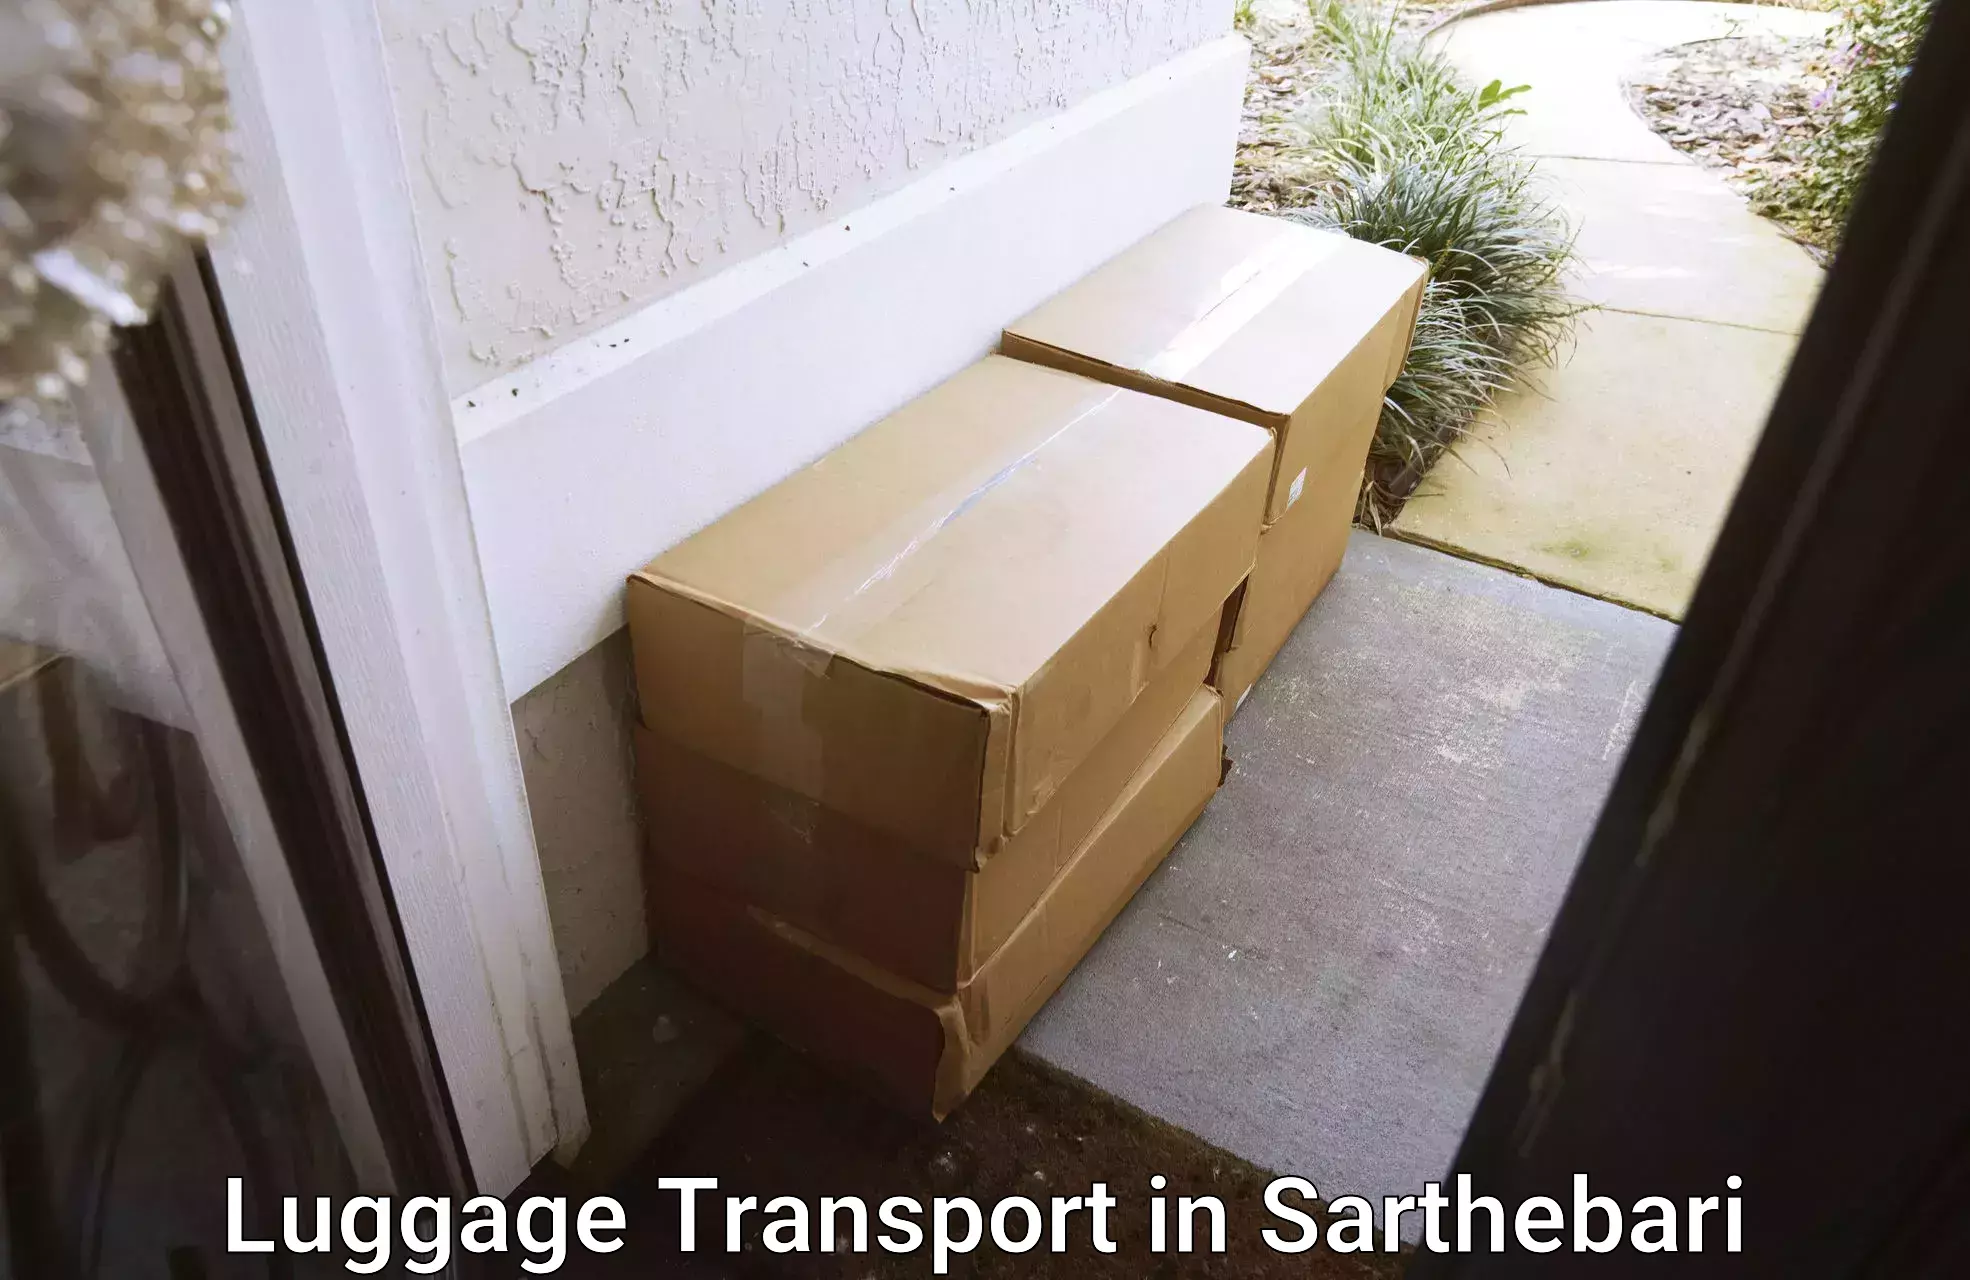 Corporate baggage transport in Sarthebari